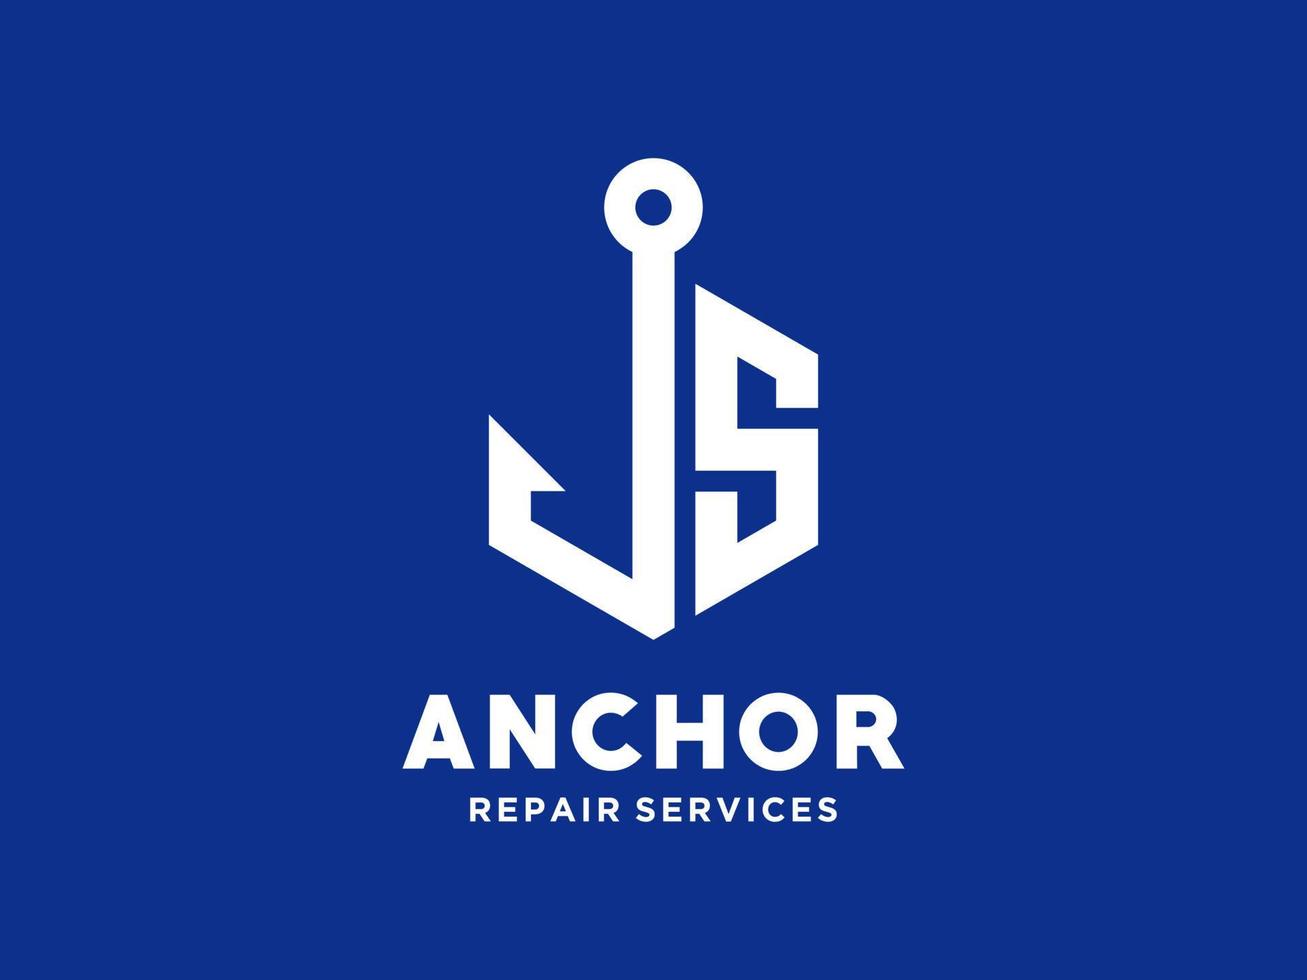 logo design s ancora alfabeto artistico per nave barca trasporto nautico della marina vettore libero